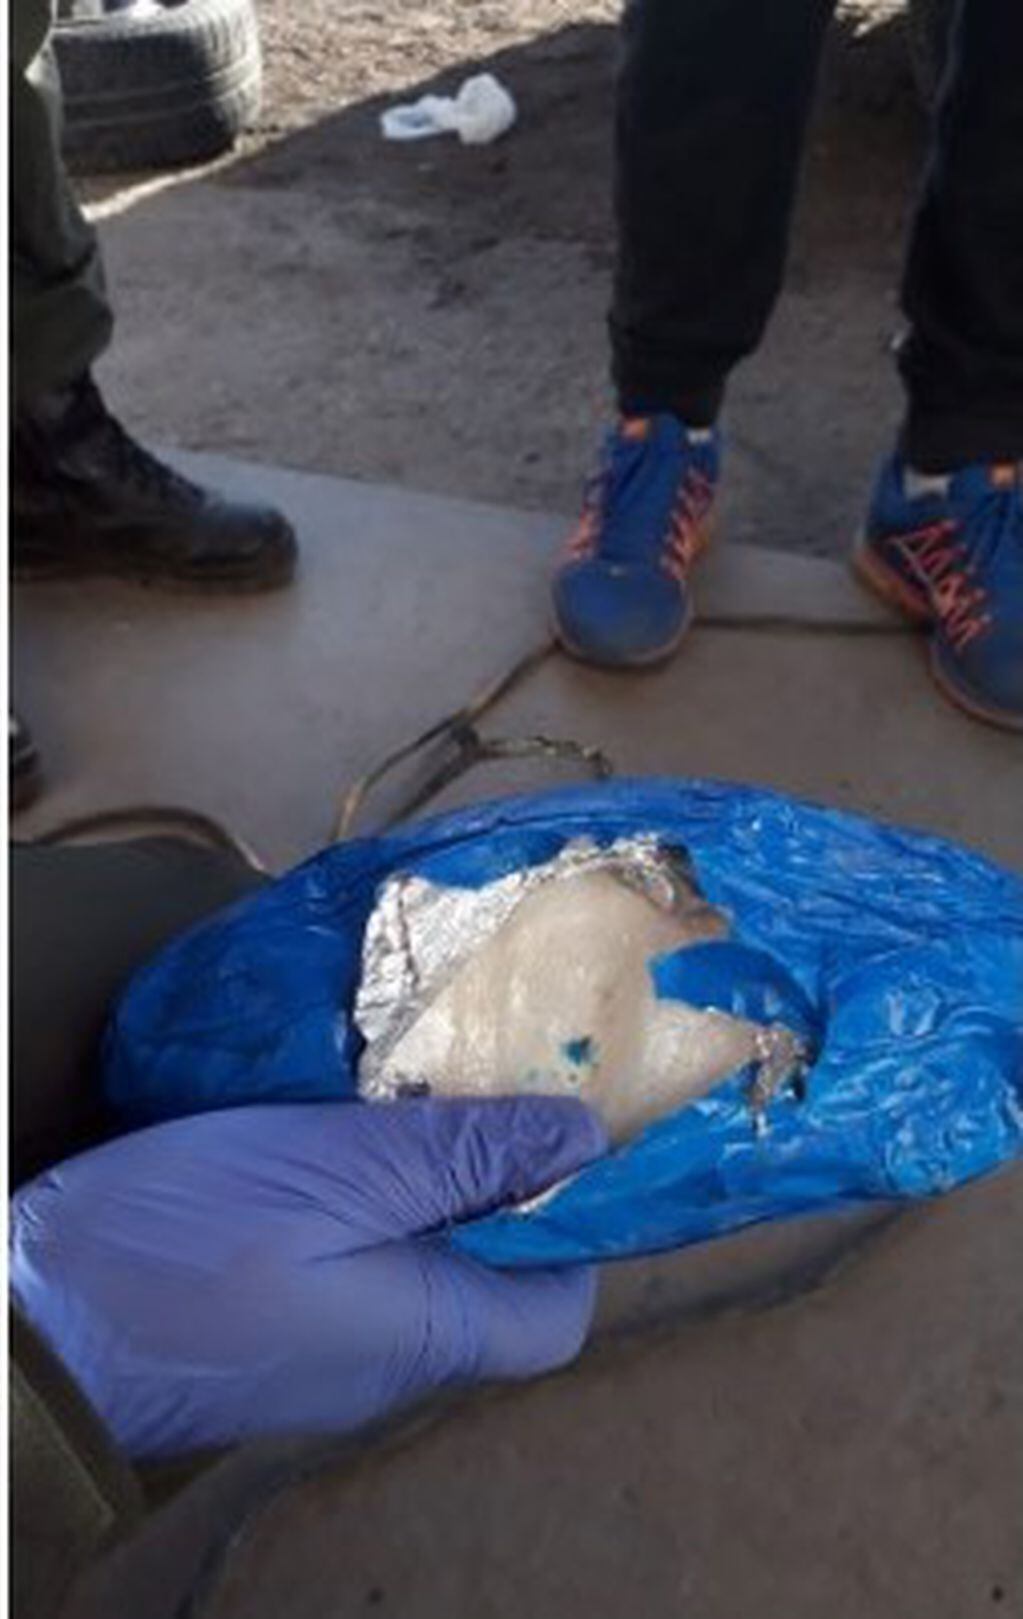 El polvo contenido en los envoltorios dio positivo para cocaína a las pruebas de narcotest.